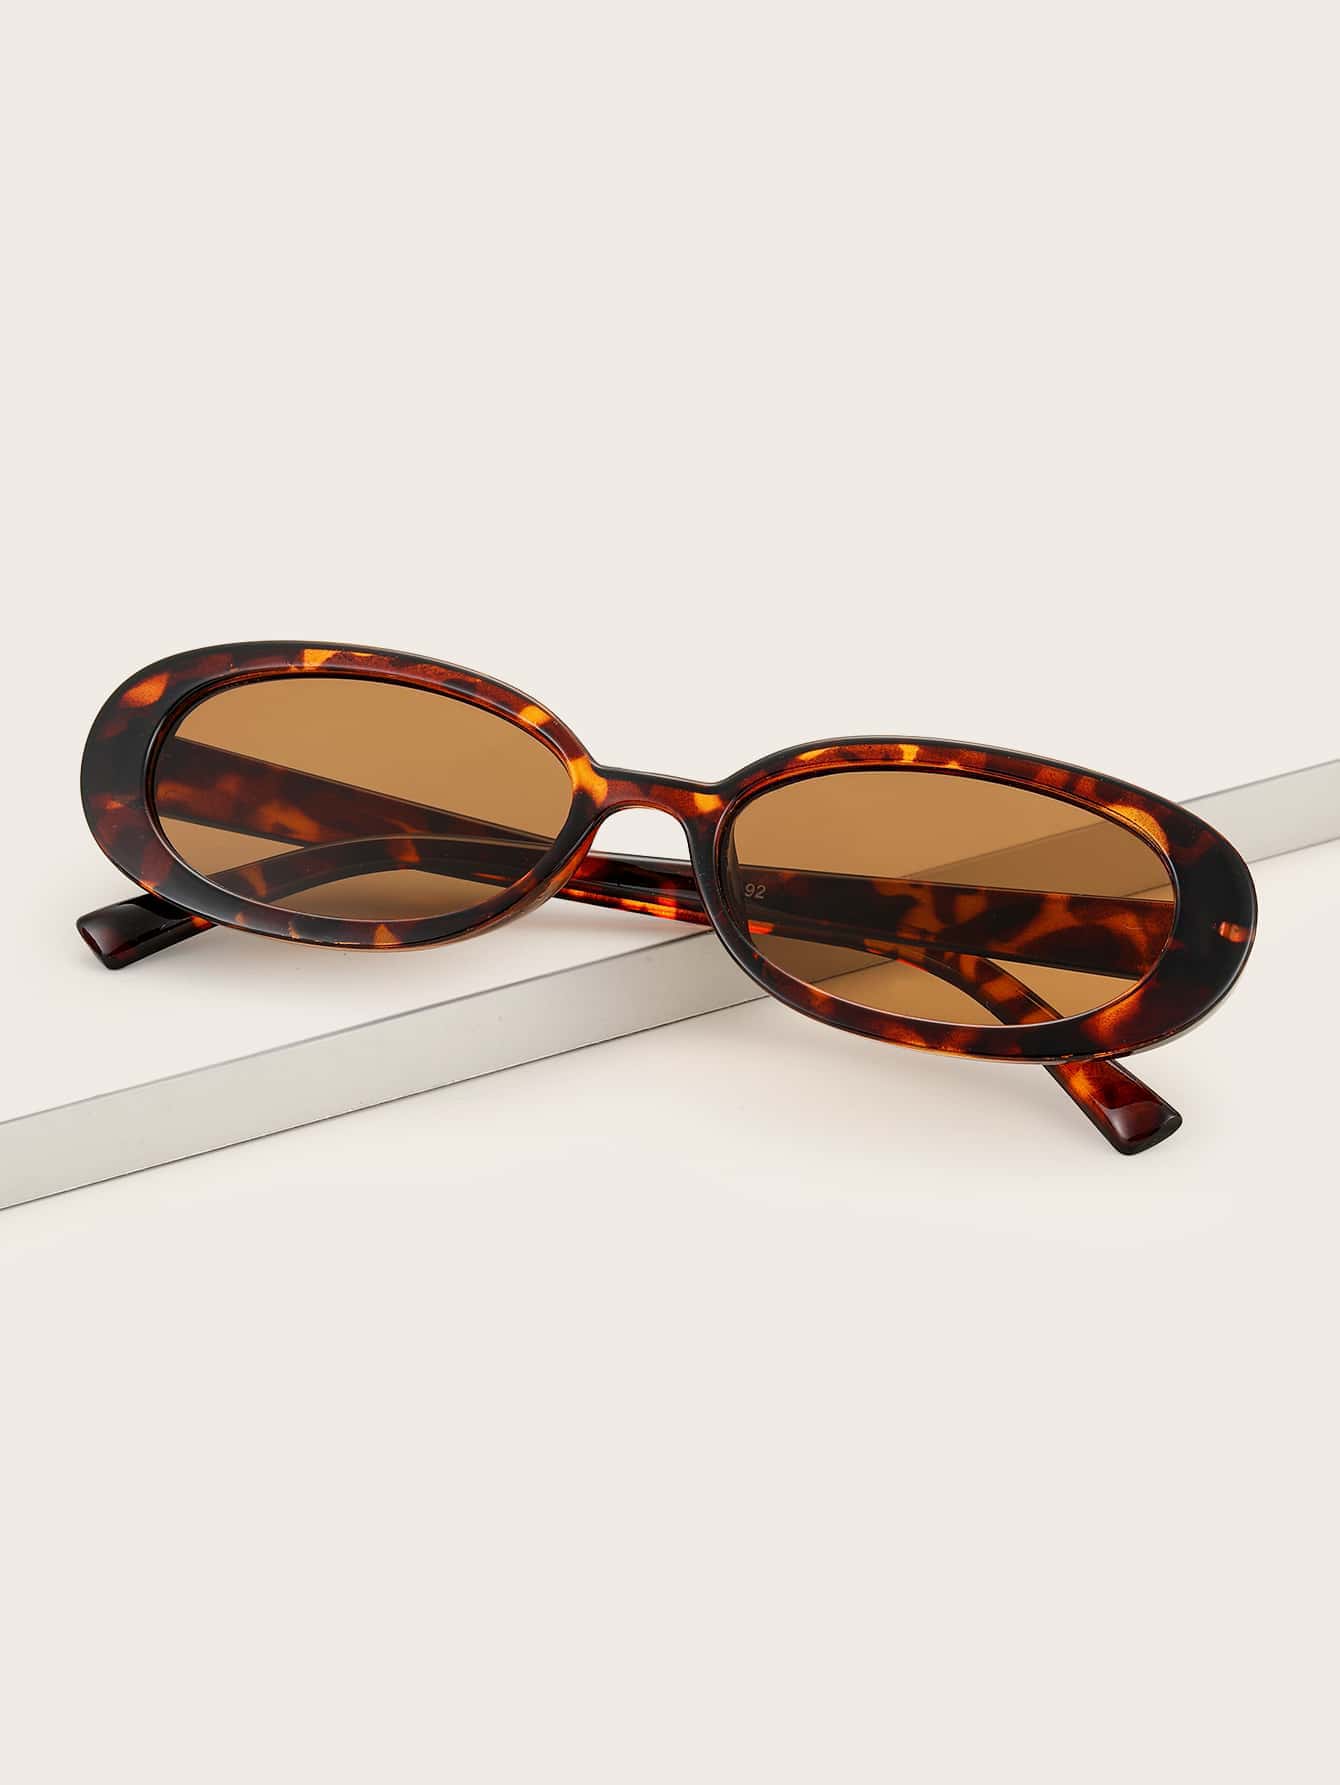 Овальные модные очки в черепаховой оправе для модного винтажного образа в стиле стимпанк